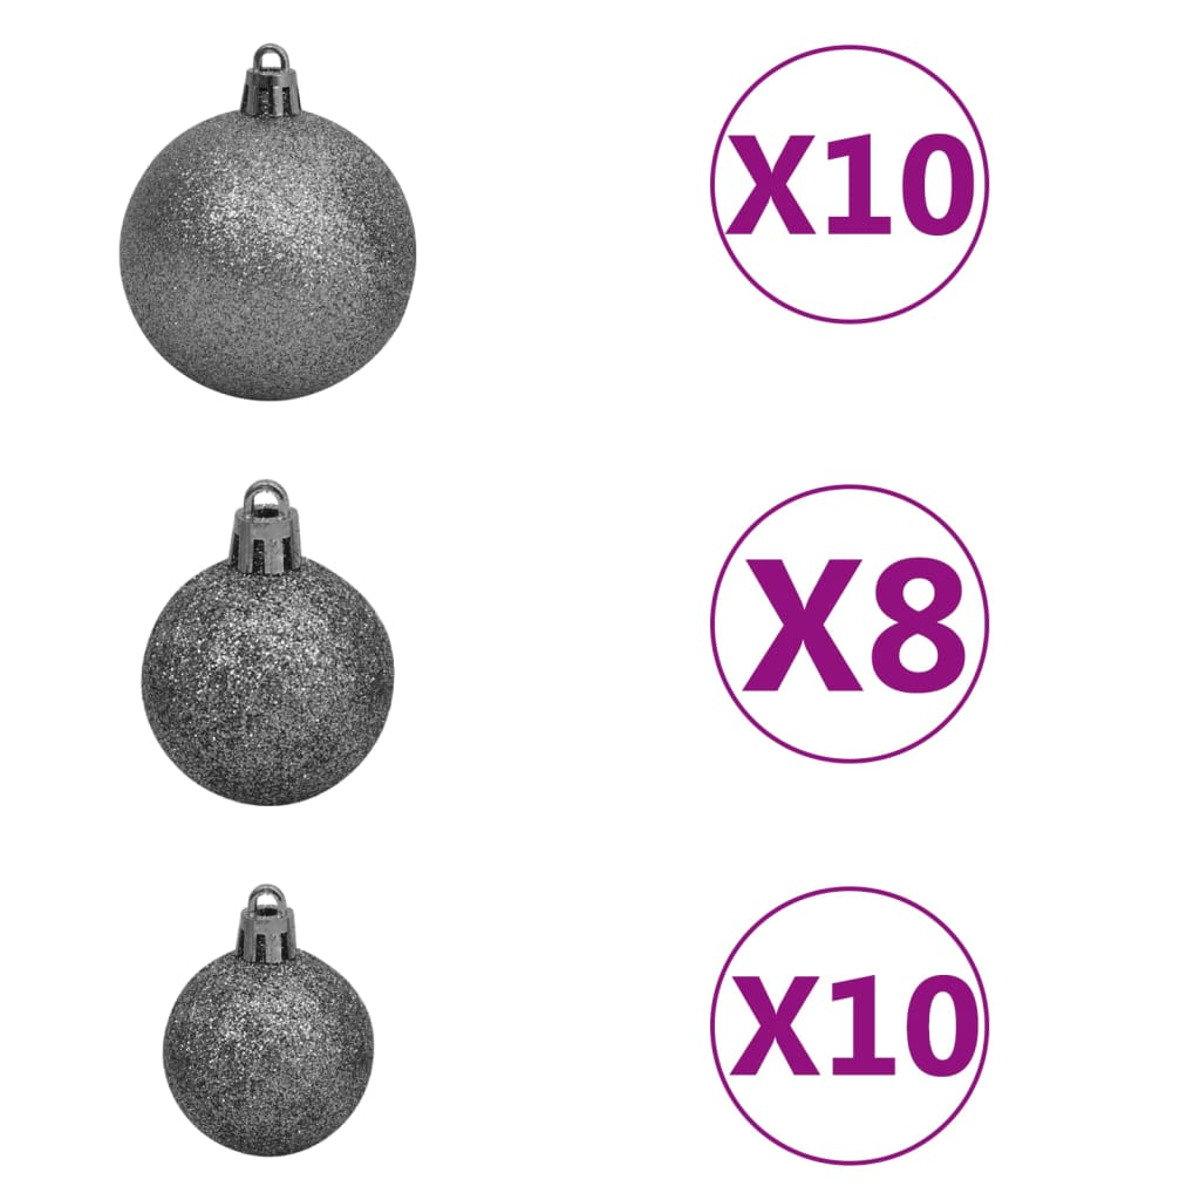 VIDAXL 3077894 Weihnachtsbaum